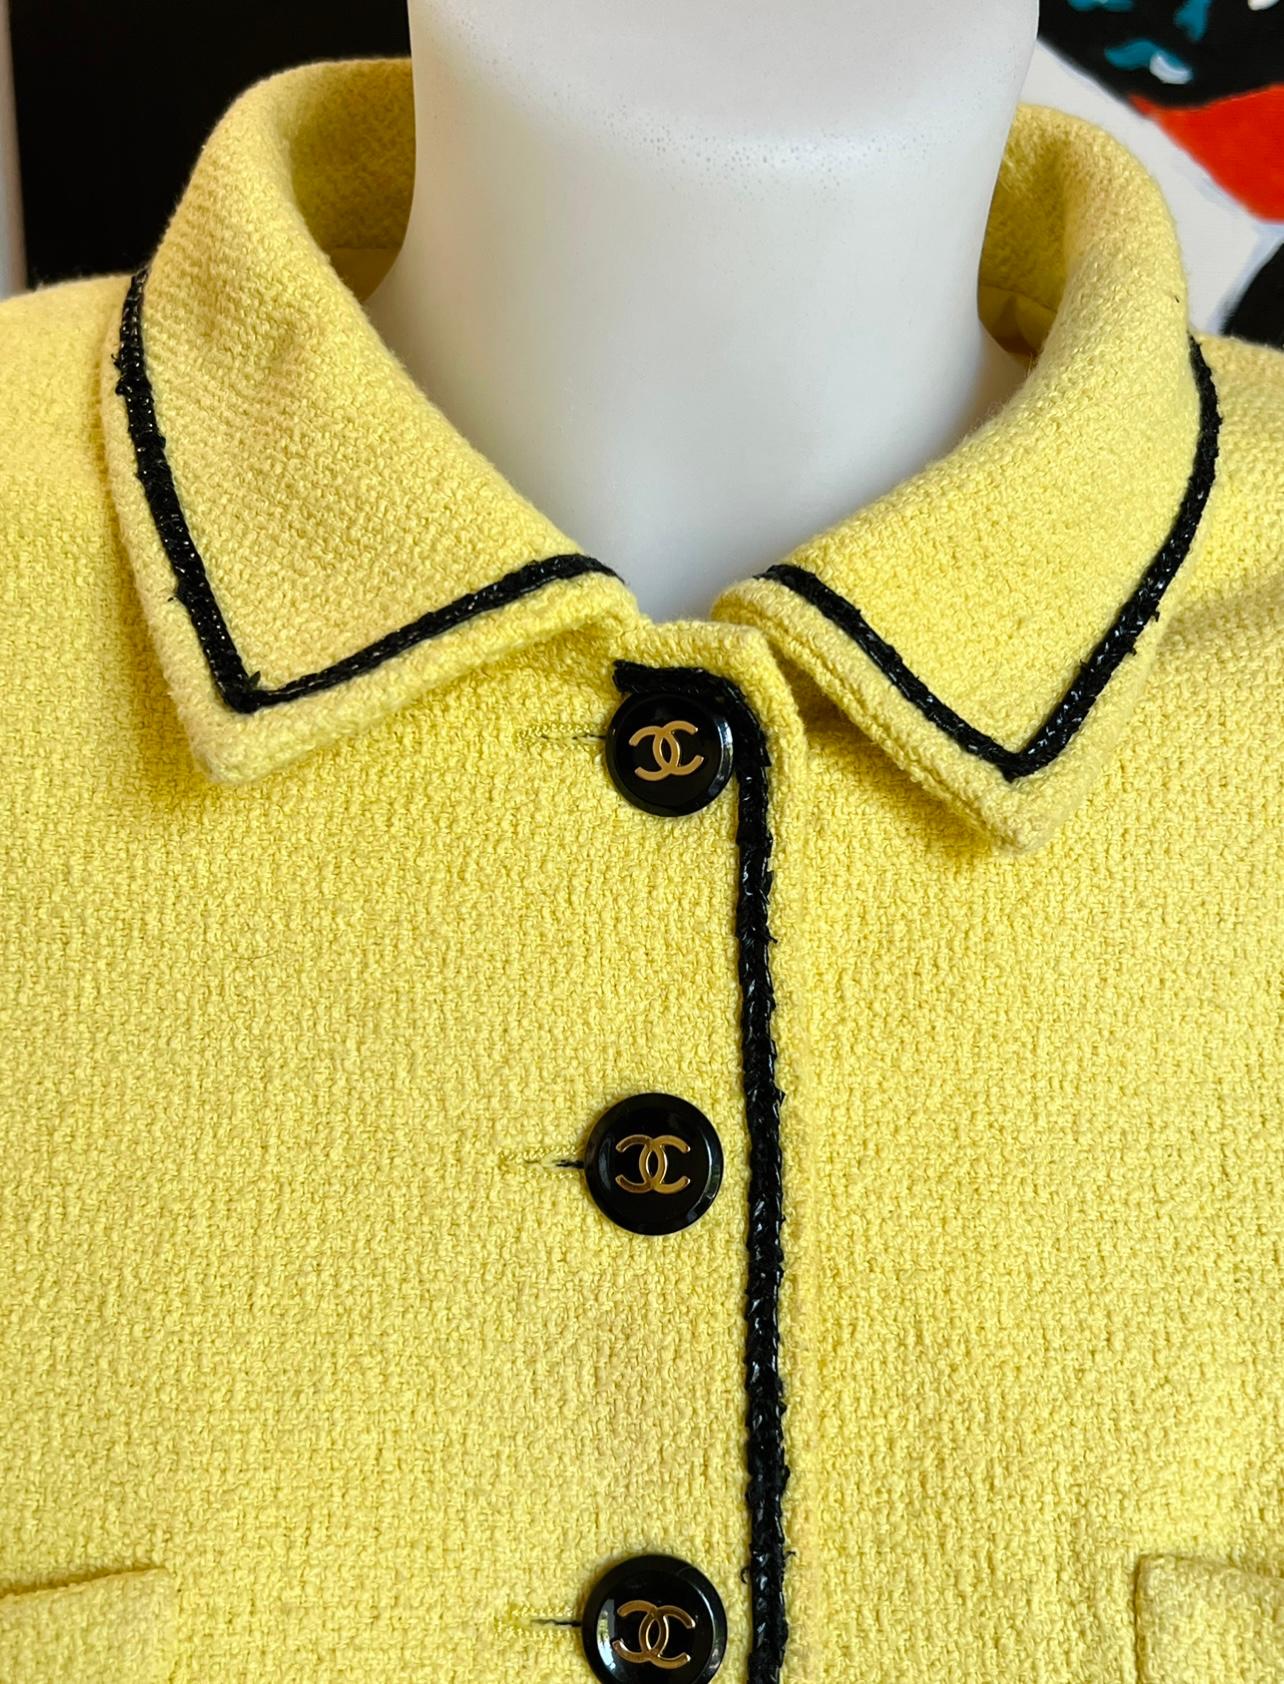 Rare et collector Chanel printemps été 1995 collection Barbie veste cropped jaune, taille 38 FR, convient parfaitement à une taille 36 FR ou un vrai 38 FR. Portée par Claudia Schiffers pour la campagne Chanel du printemps 1995, photographiée par